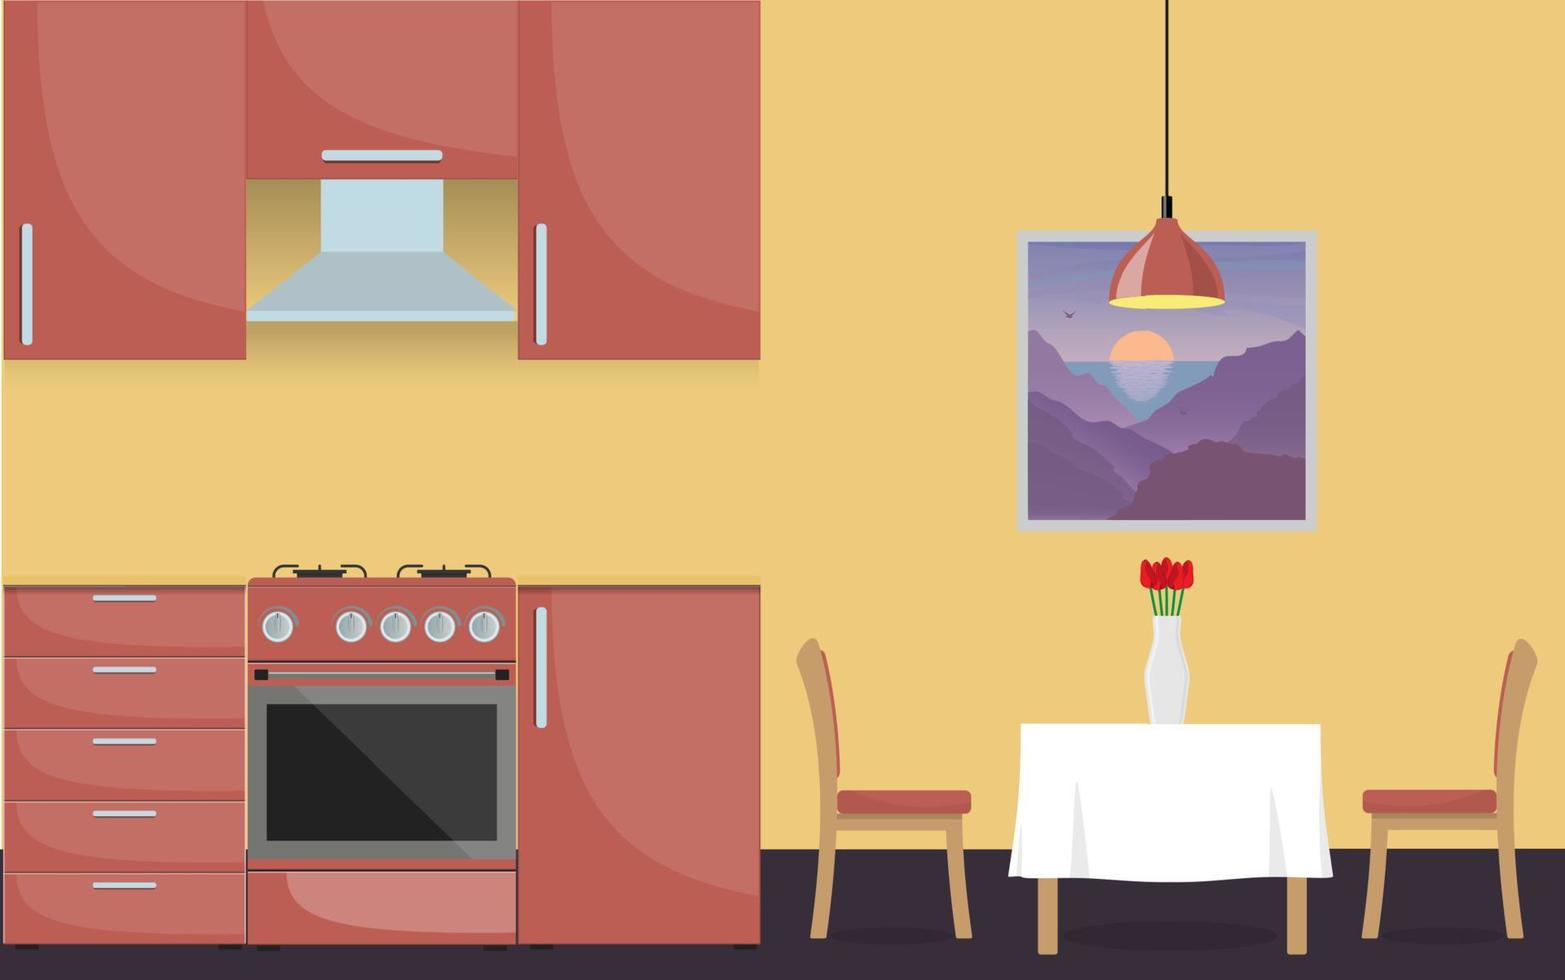 interior elegante da cozinha moderna. móveis de cozinha, fogão a gás, mesa de jantar e vaso com flores. ilustração vetorial em estilo simples. vetor